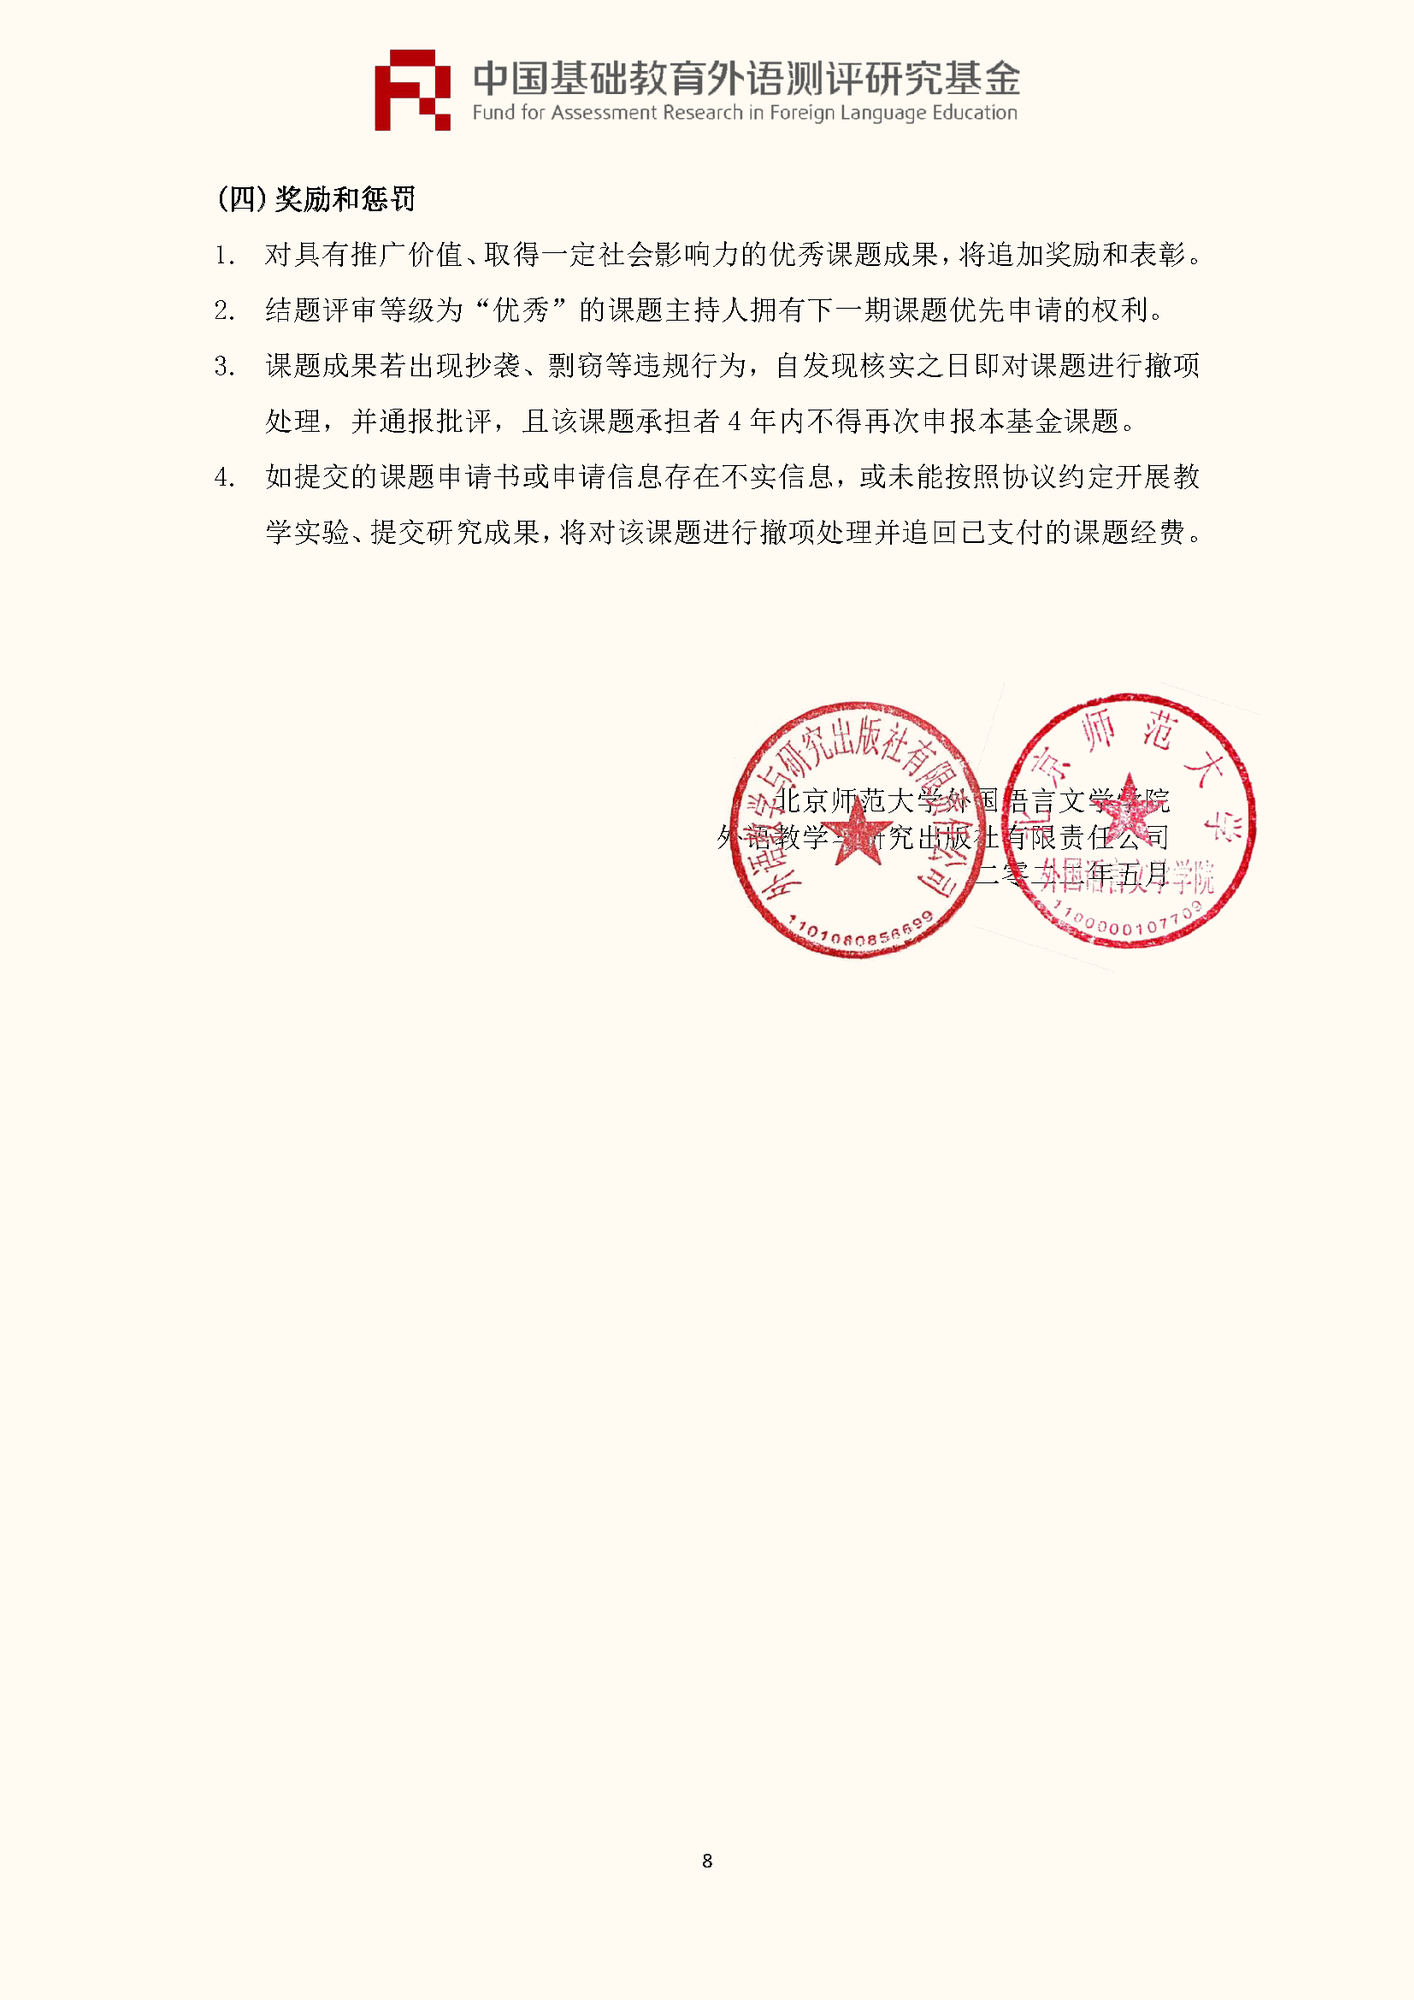 ”中国基础教育外语测评研究基金“项目第四期课题申报指南_页面_10